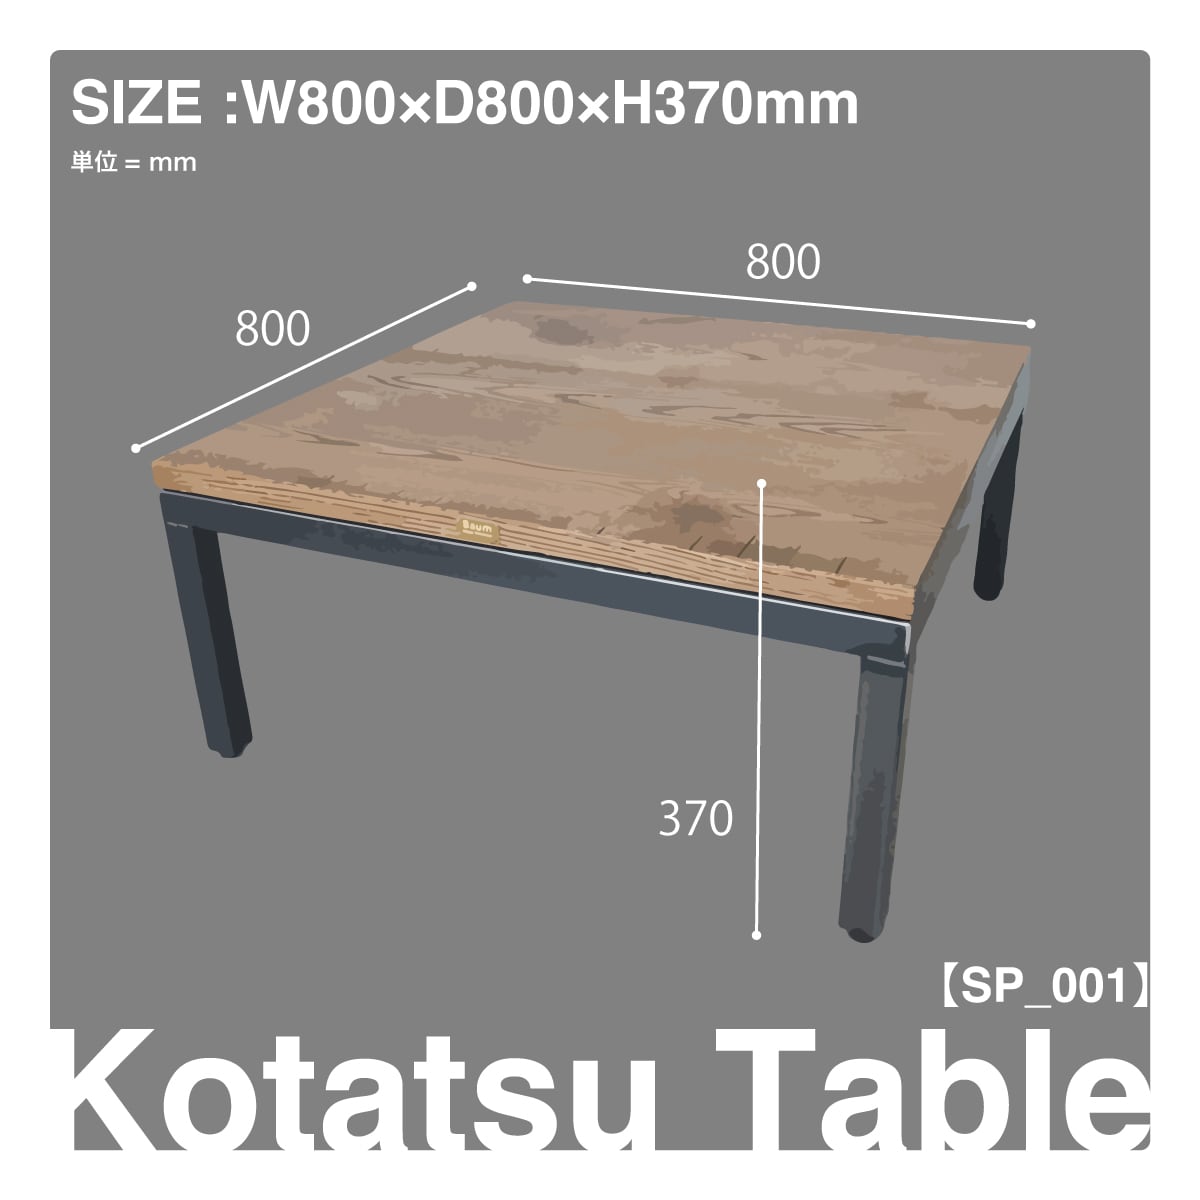 11 [Kotatsu Table【SP_001】(Oak)] こたつ こたつテーブル テーブル 机 アイアン ダイニングテーブル アイアン家具  ローテーブル ソファテーブル アンティーク ヴィンテージ おしゃれ 座卓 インテリア | 